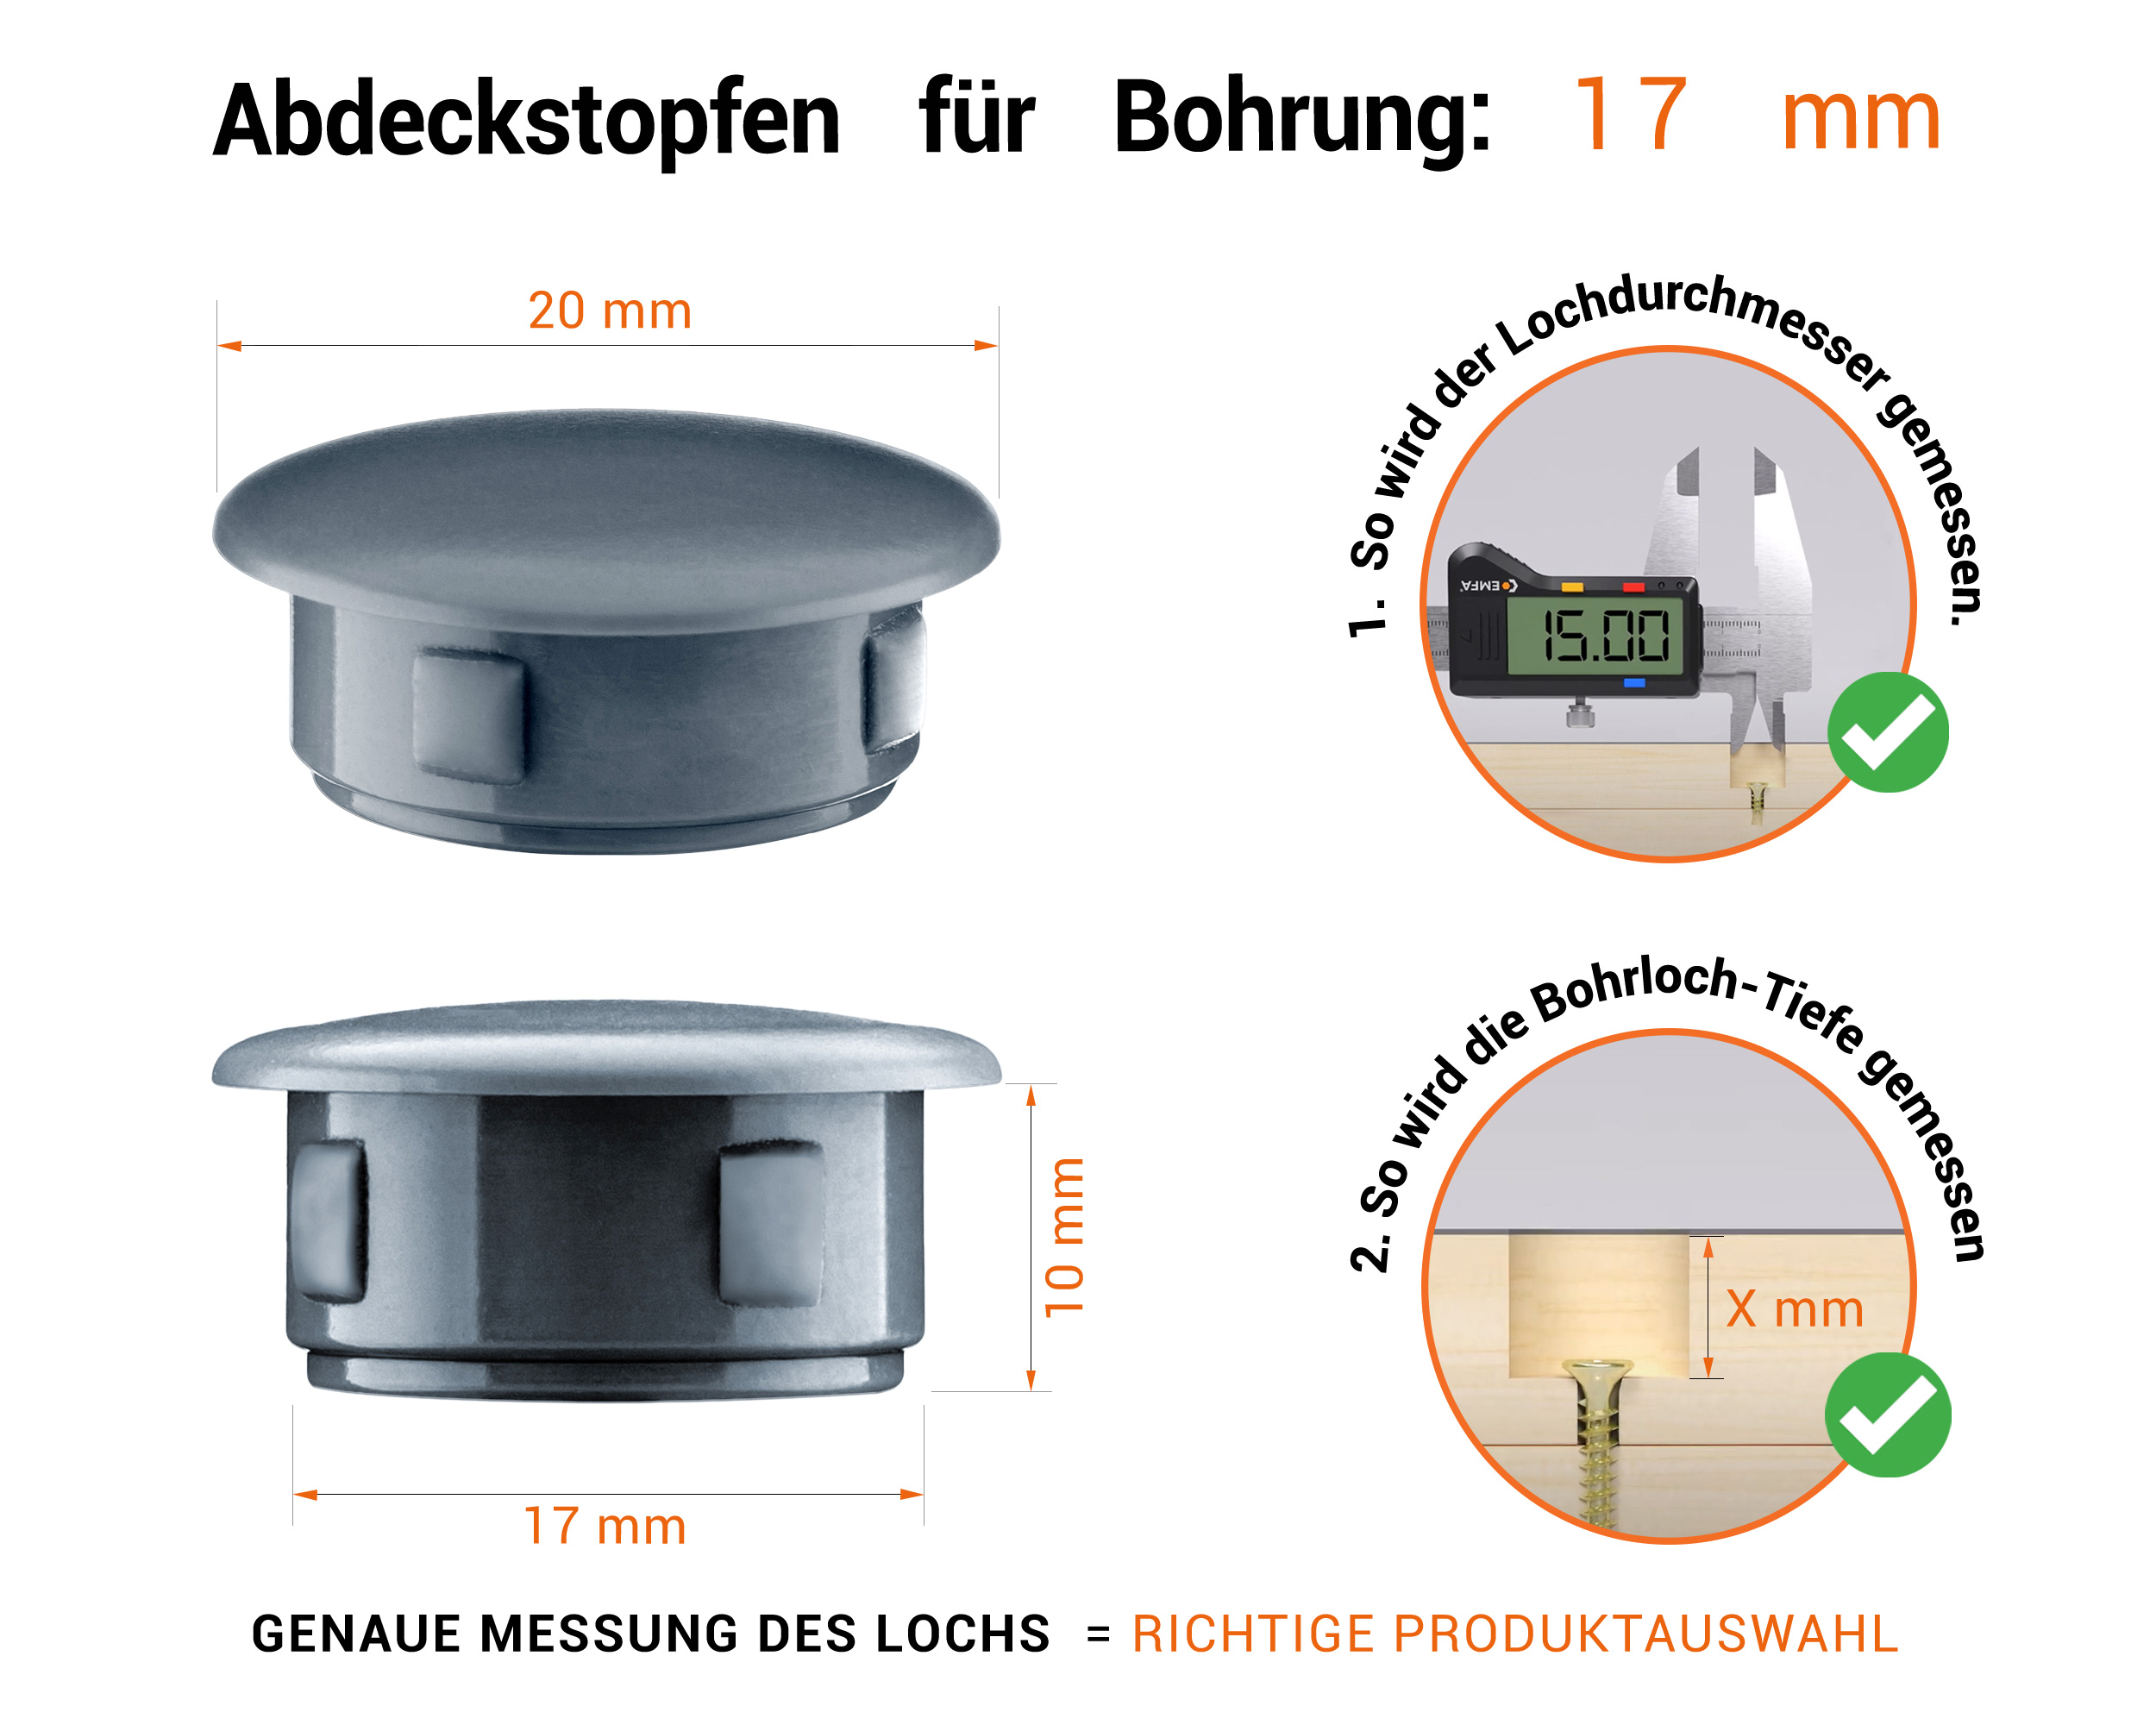 Anthrazite Blindstopfen aus Kunststoff für Bohrung 17 mmmm mit technischen Abmessungen und Anleitung für korrekte Messung